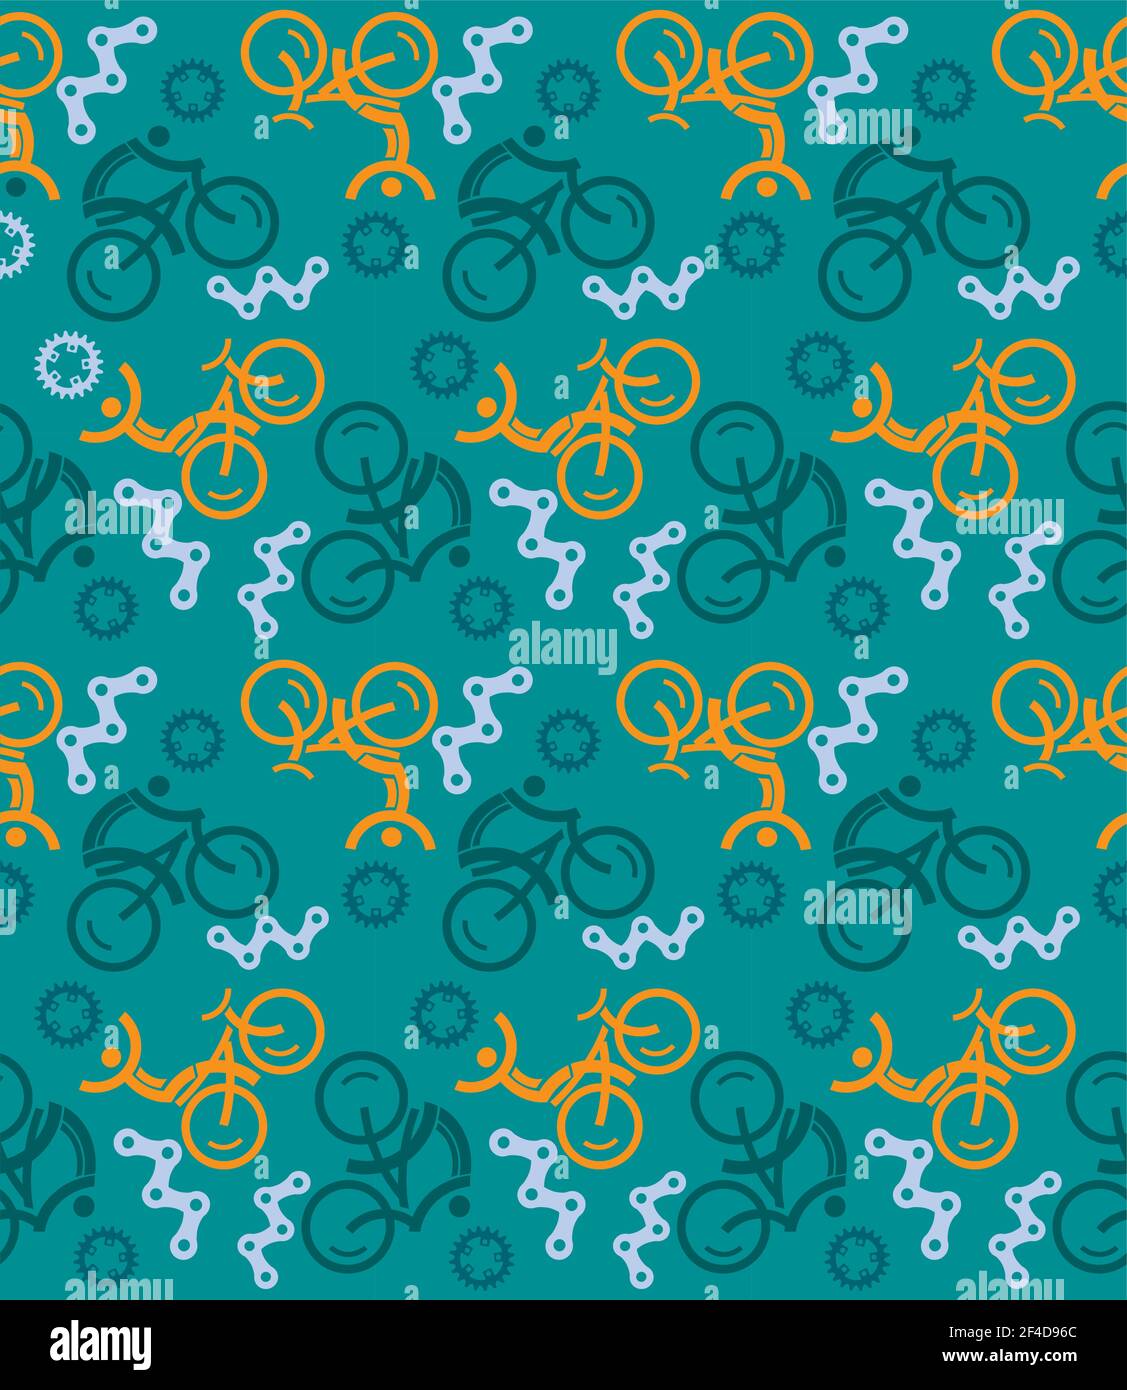 Radsport-Ikonen, Nahtloses Dekorationsmuster. Farbenfroher Hintergrund mit Radfahrern und Fahrradteilen Symbolen. Vektor verfügbar. Stock Vektor